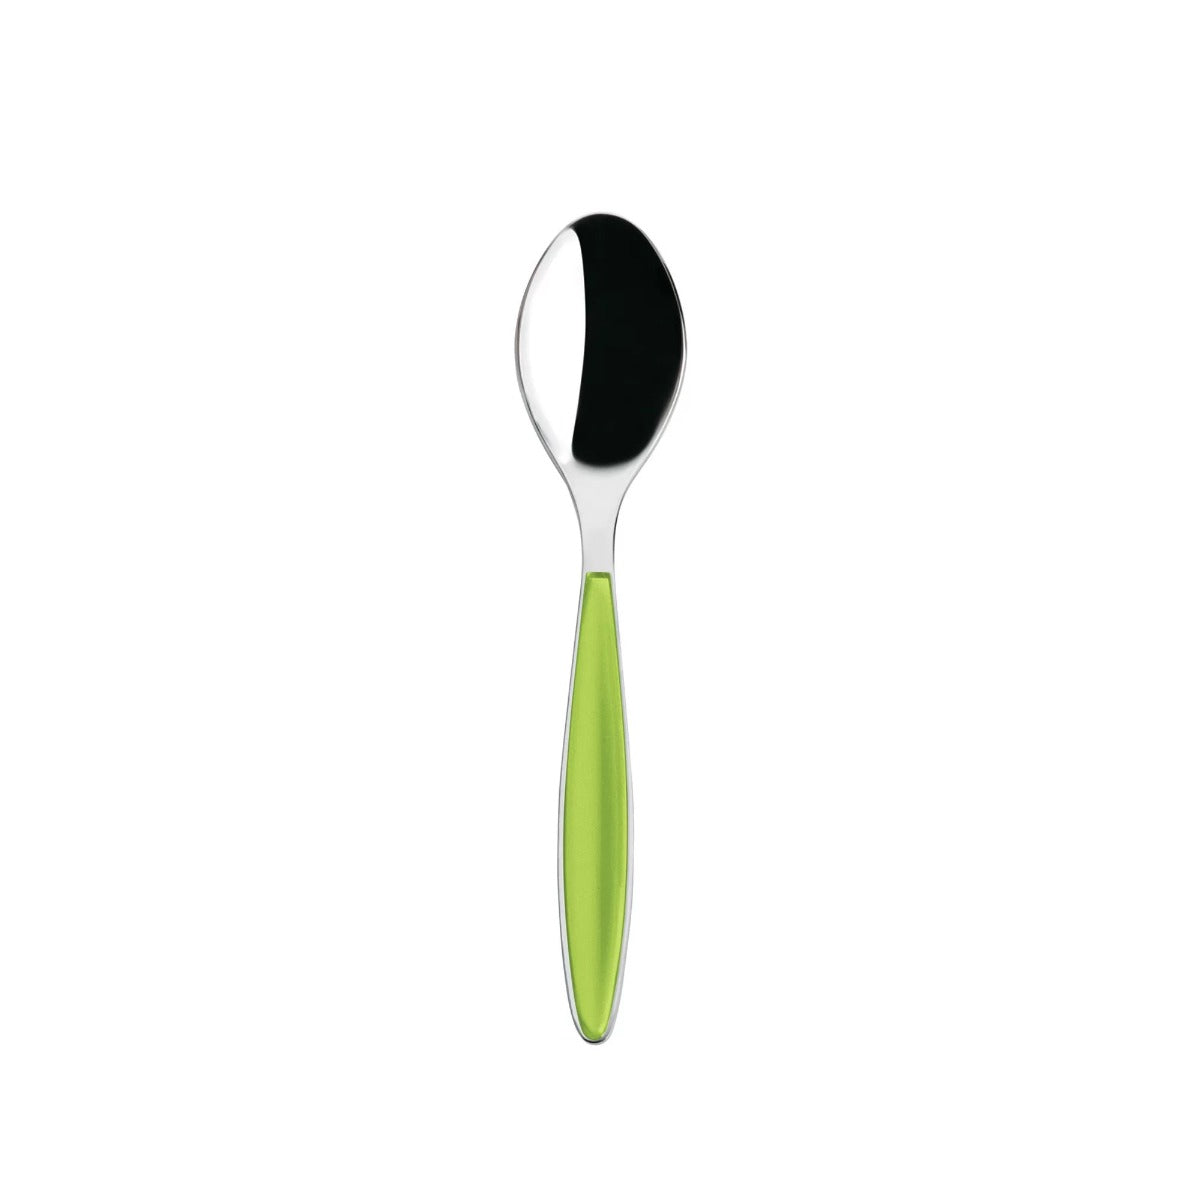 Guzzini teaspoon, green